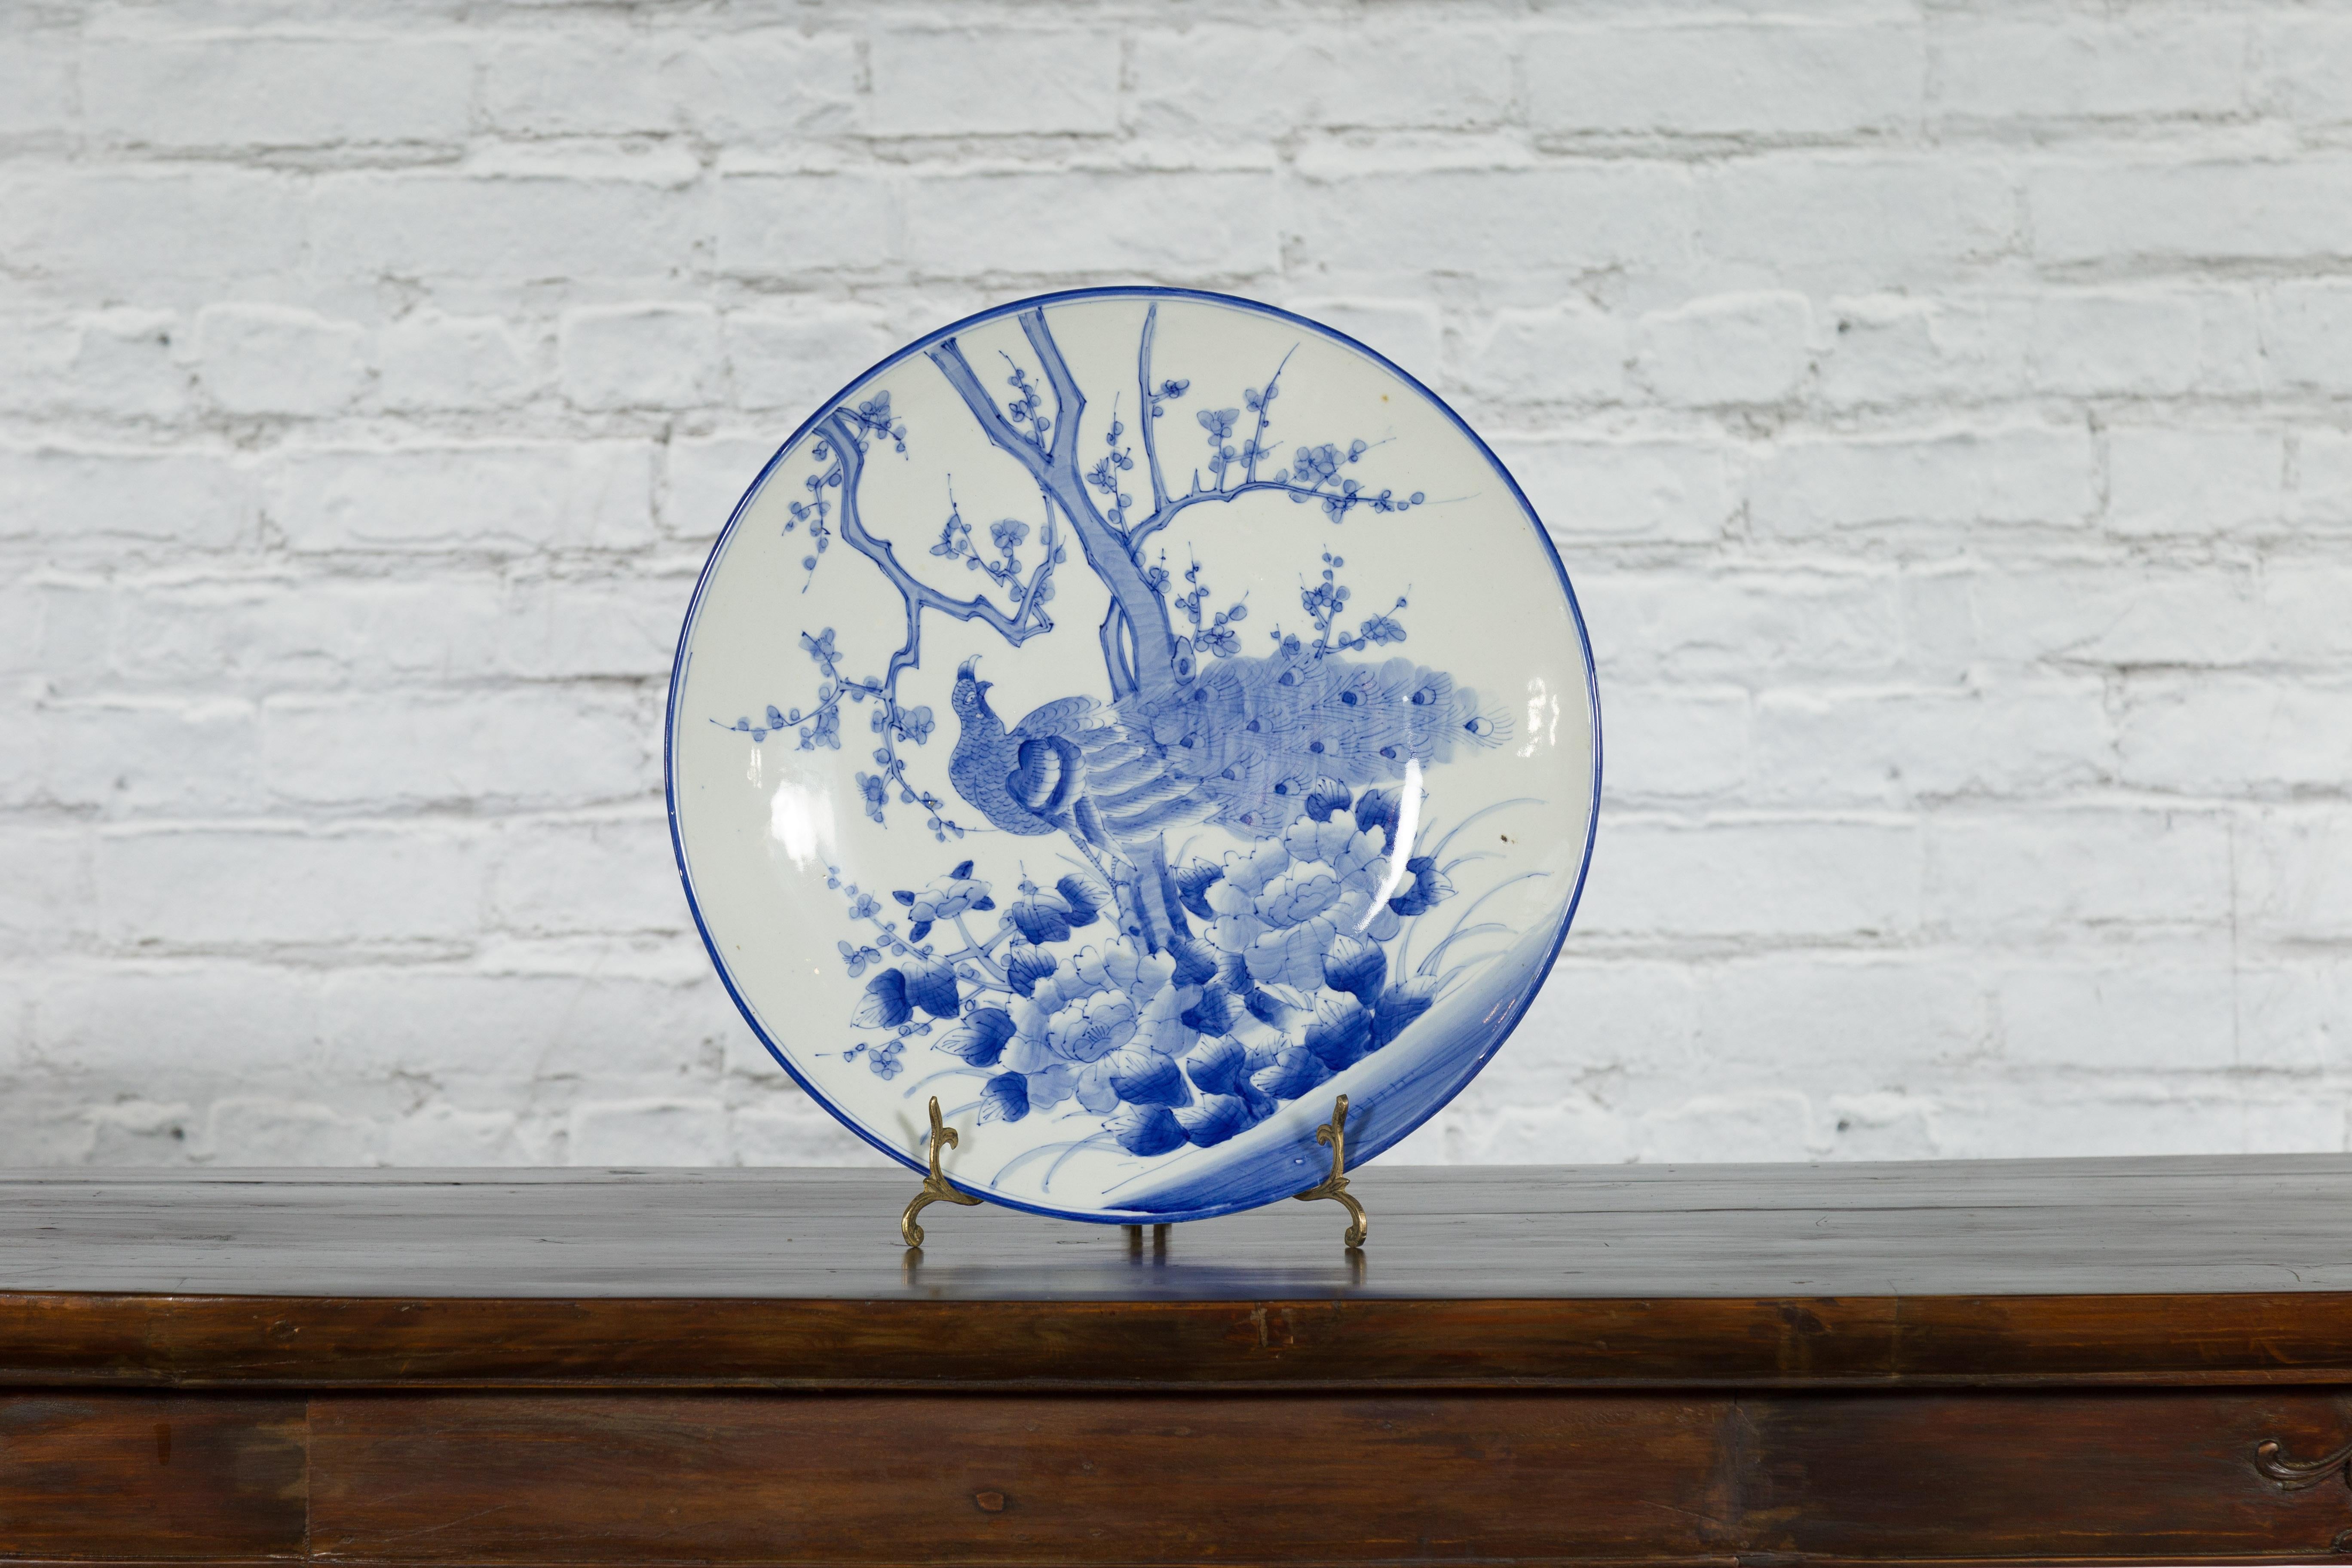 Japanischer Porzellanteller aus dem 19. Jahrhundert mit handgemaltem blau-weißem Dekor aus blühenden Bäumen, Blumen, Blättern und Pfauen. Dieser Porzellanteller wurde im 19. Jahrhundert in Japan hergestellt und zeigt ein zartes blau-weißes Dekor,